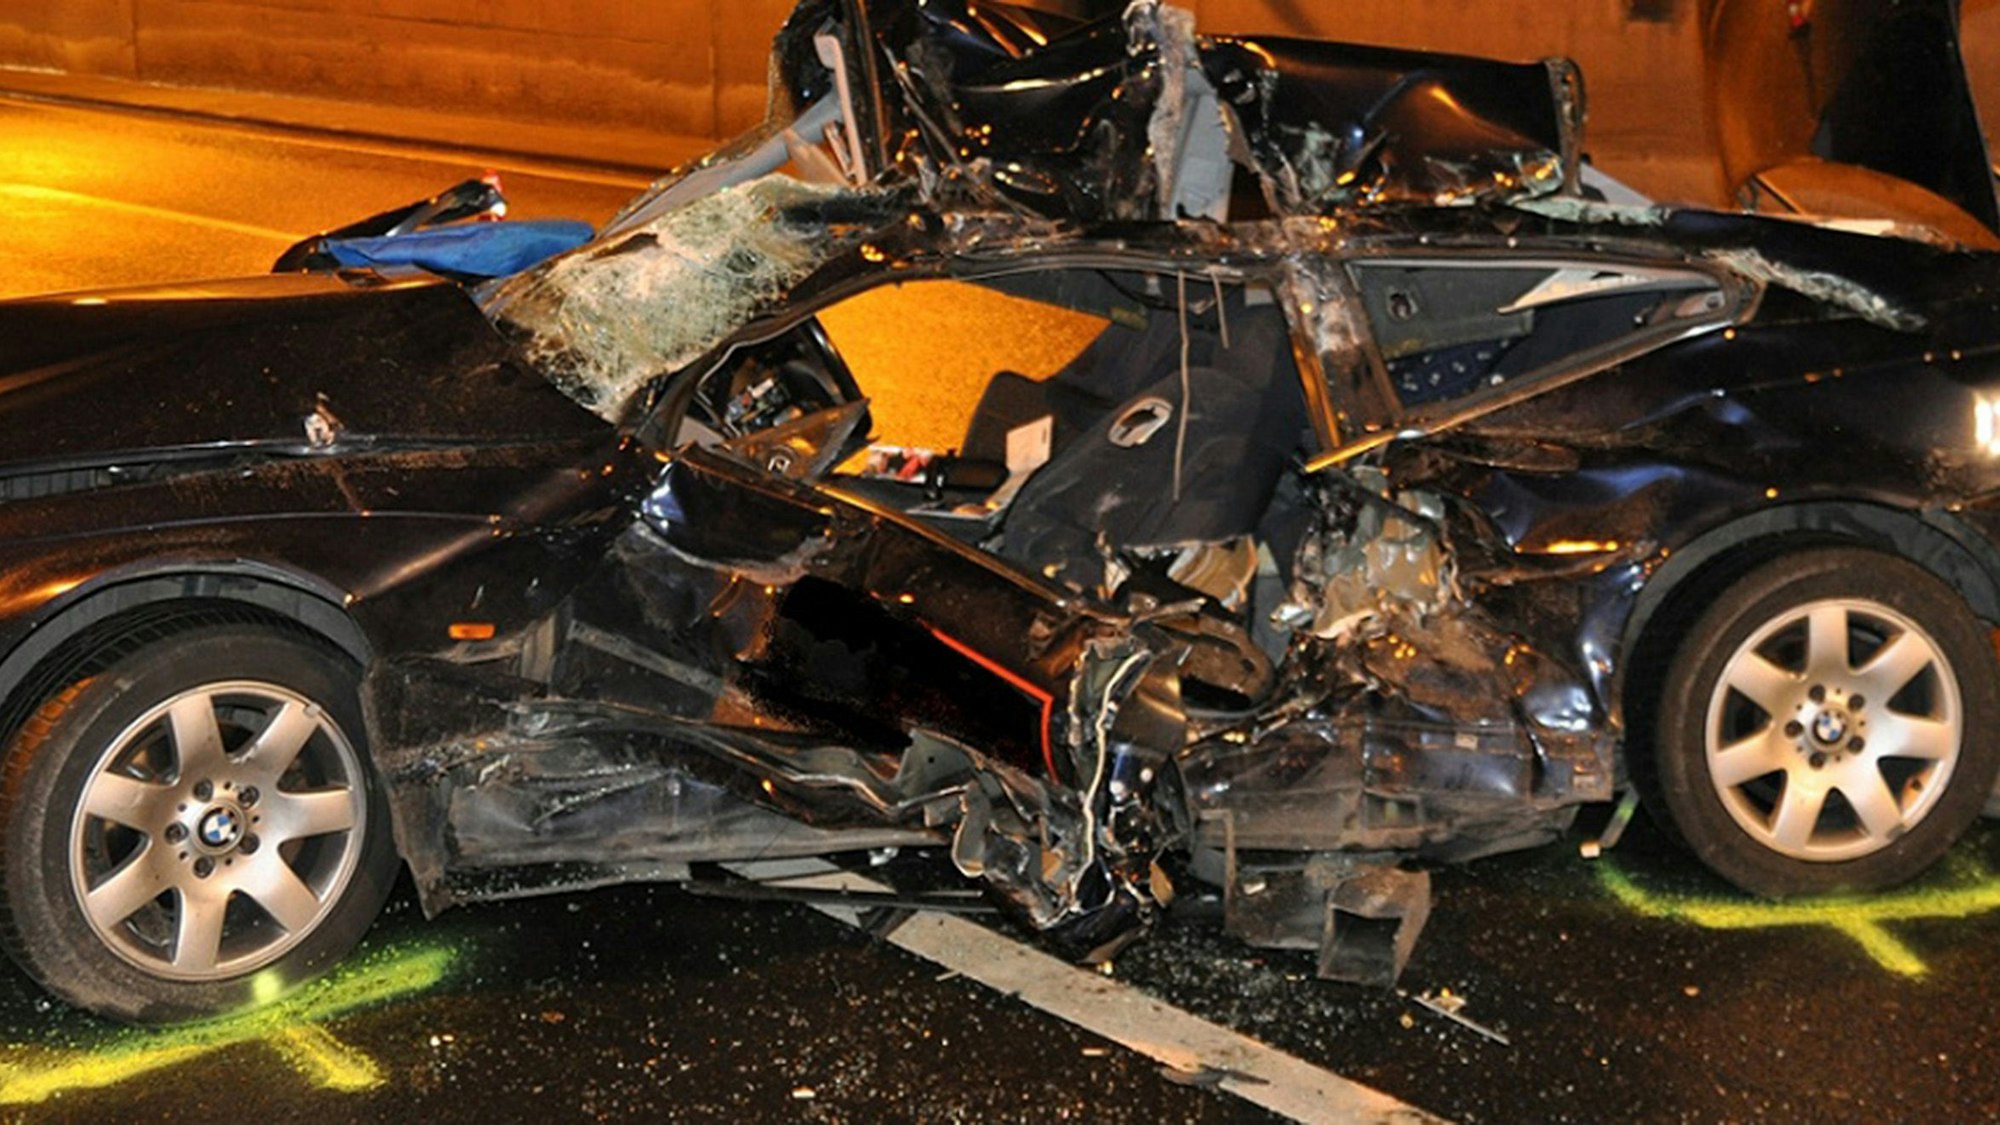 Das Bild zeigt ein vollständig zerstörtes Auto nach einem Unfall.